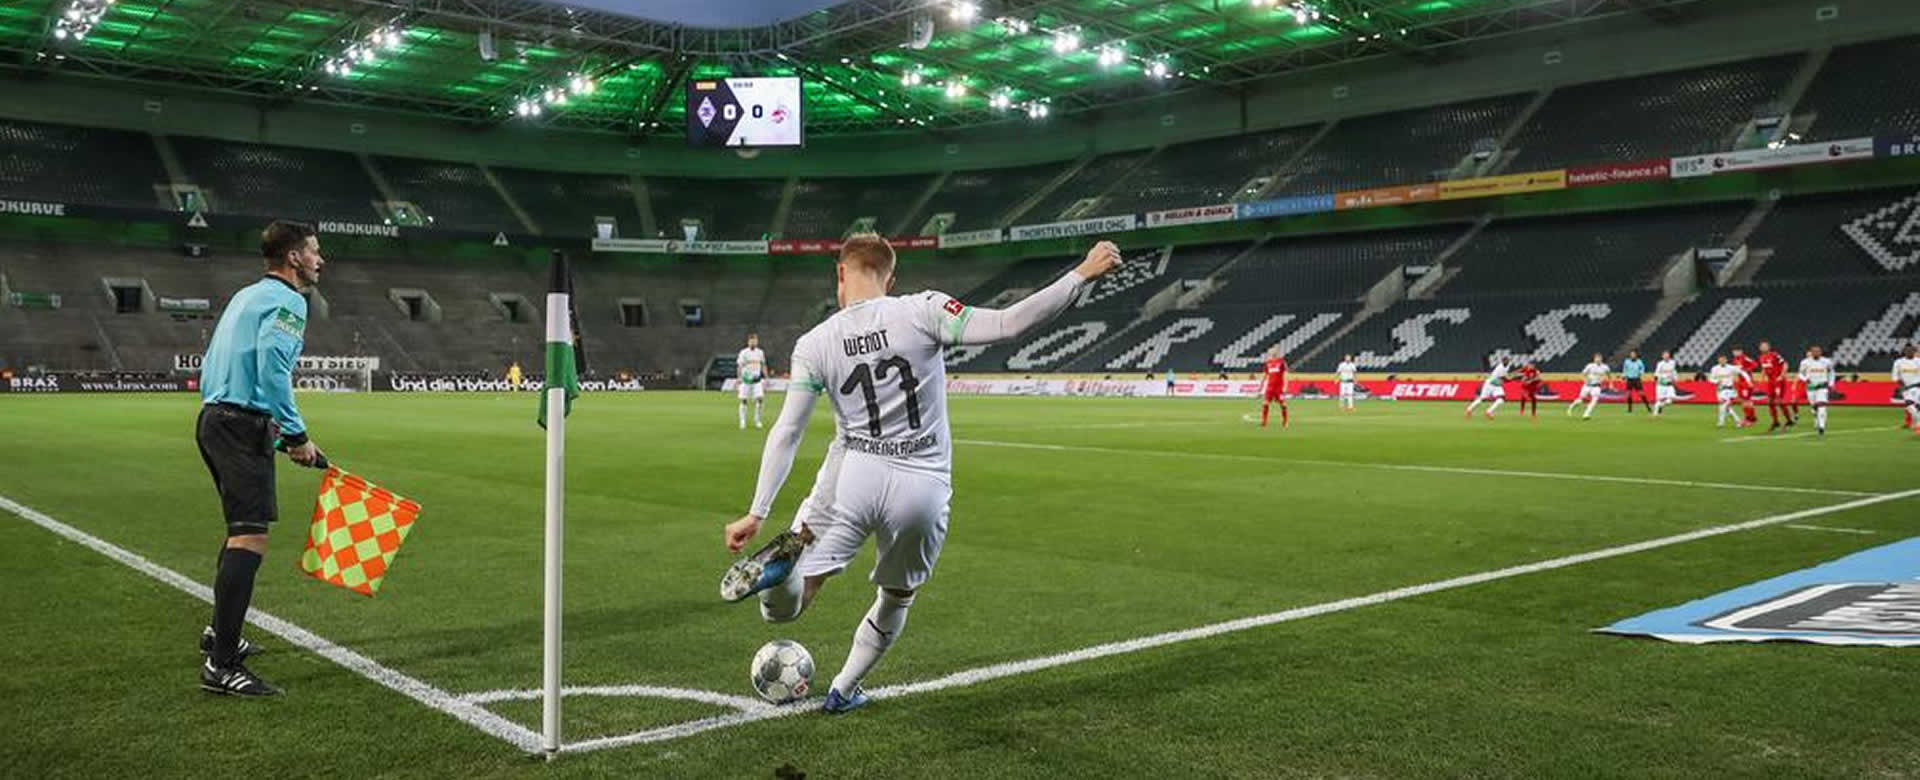 Alemania reanuda su liga de fútbol bajo estricto protocolo sanitario